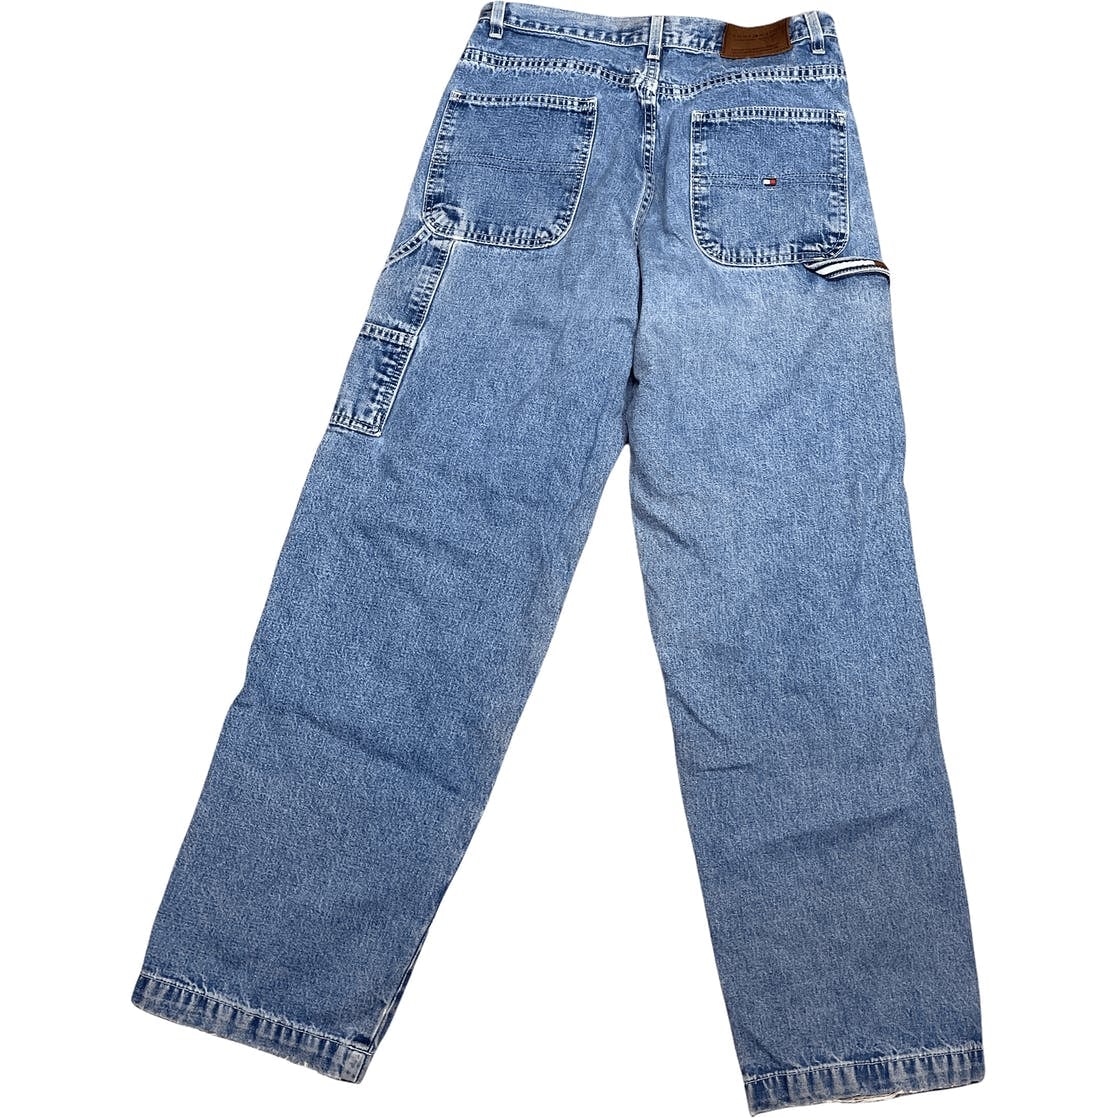 Aktualisieren mehr als 67 tommy hilfiger jeans 90s super heiß ...